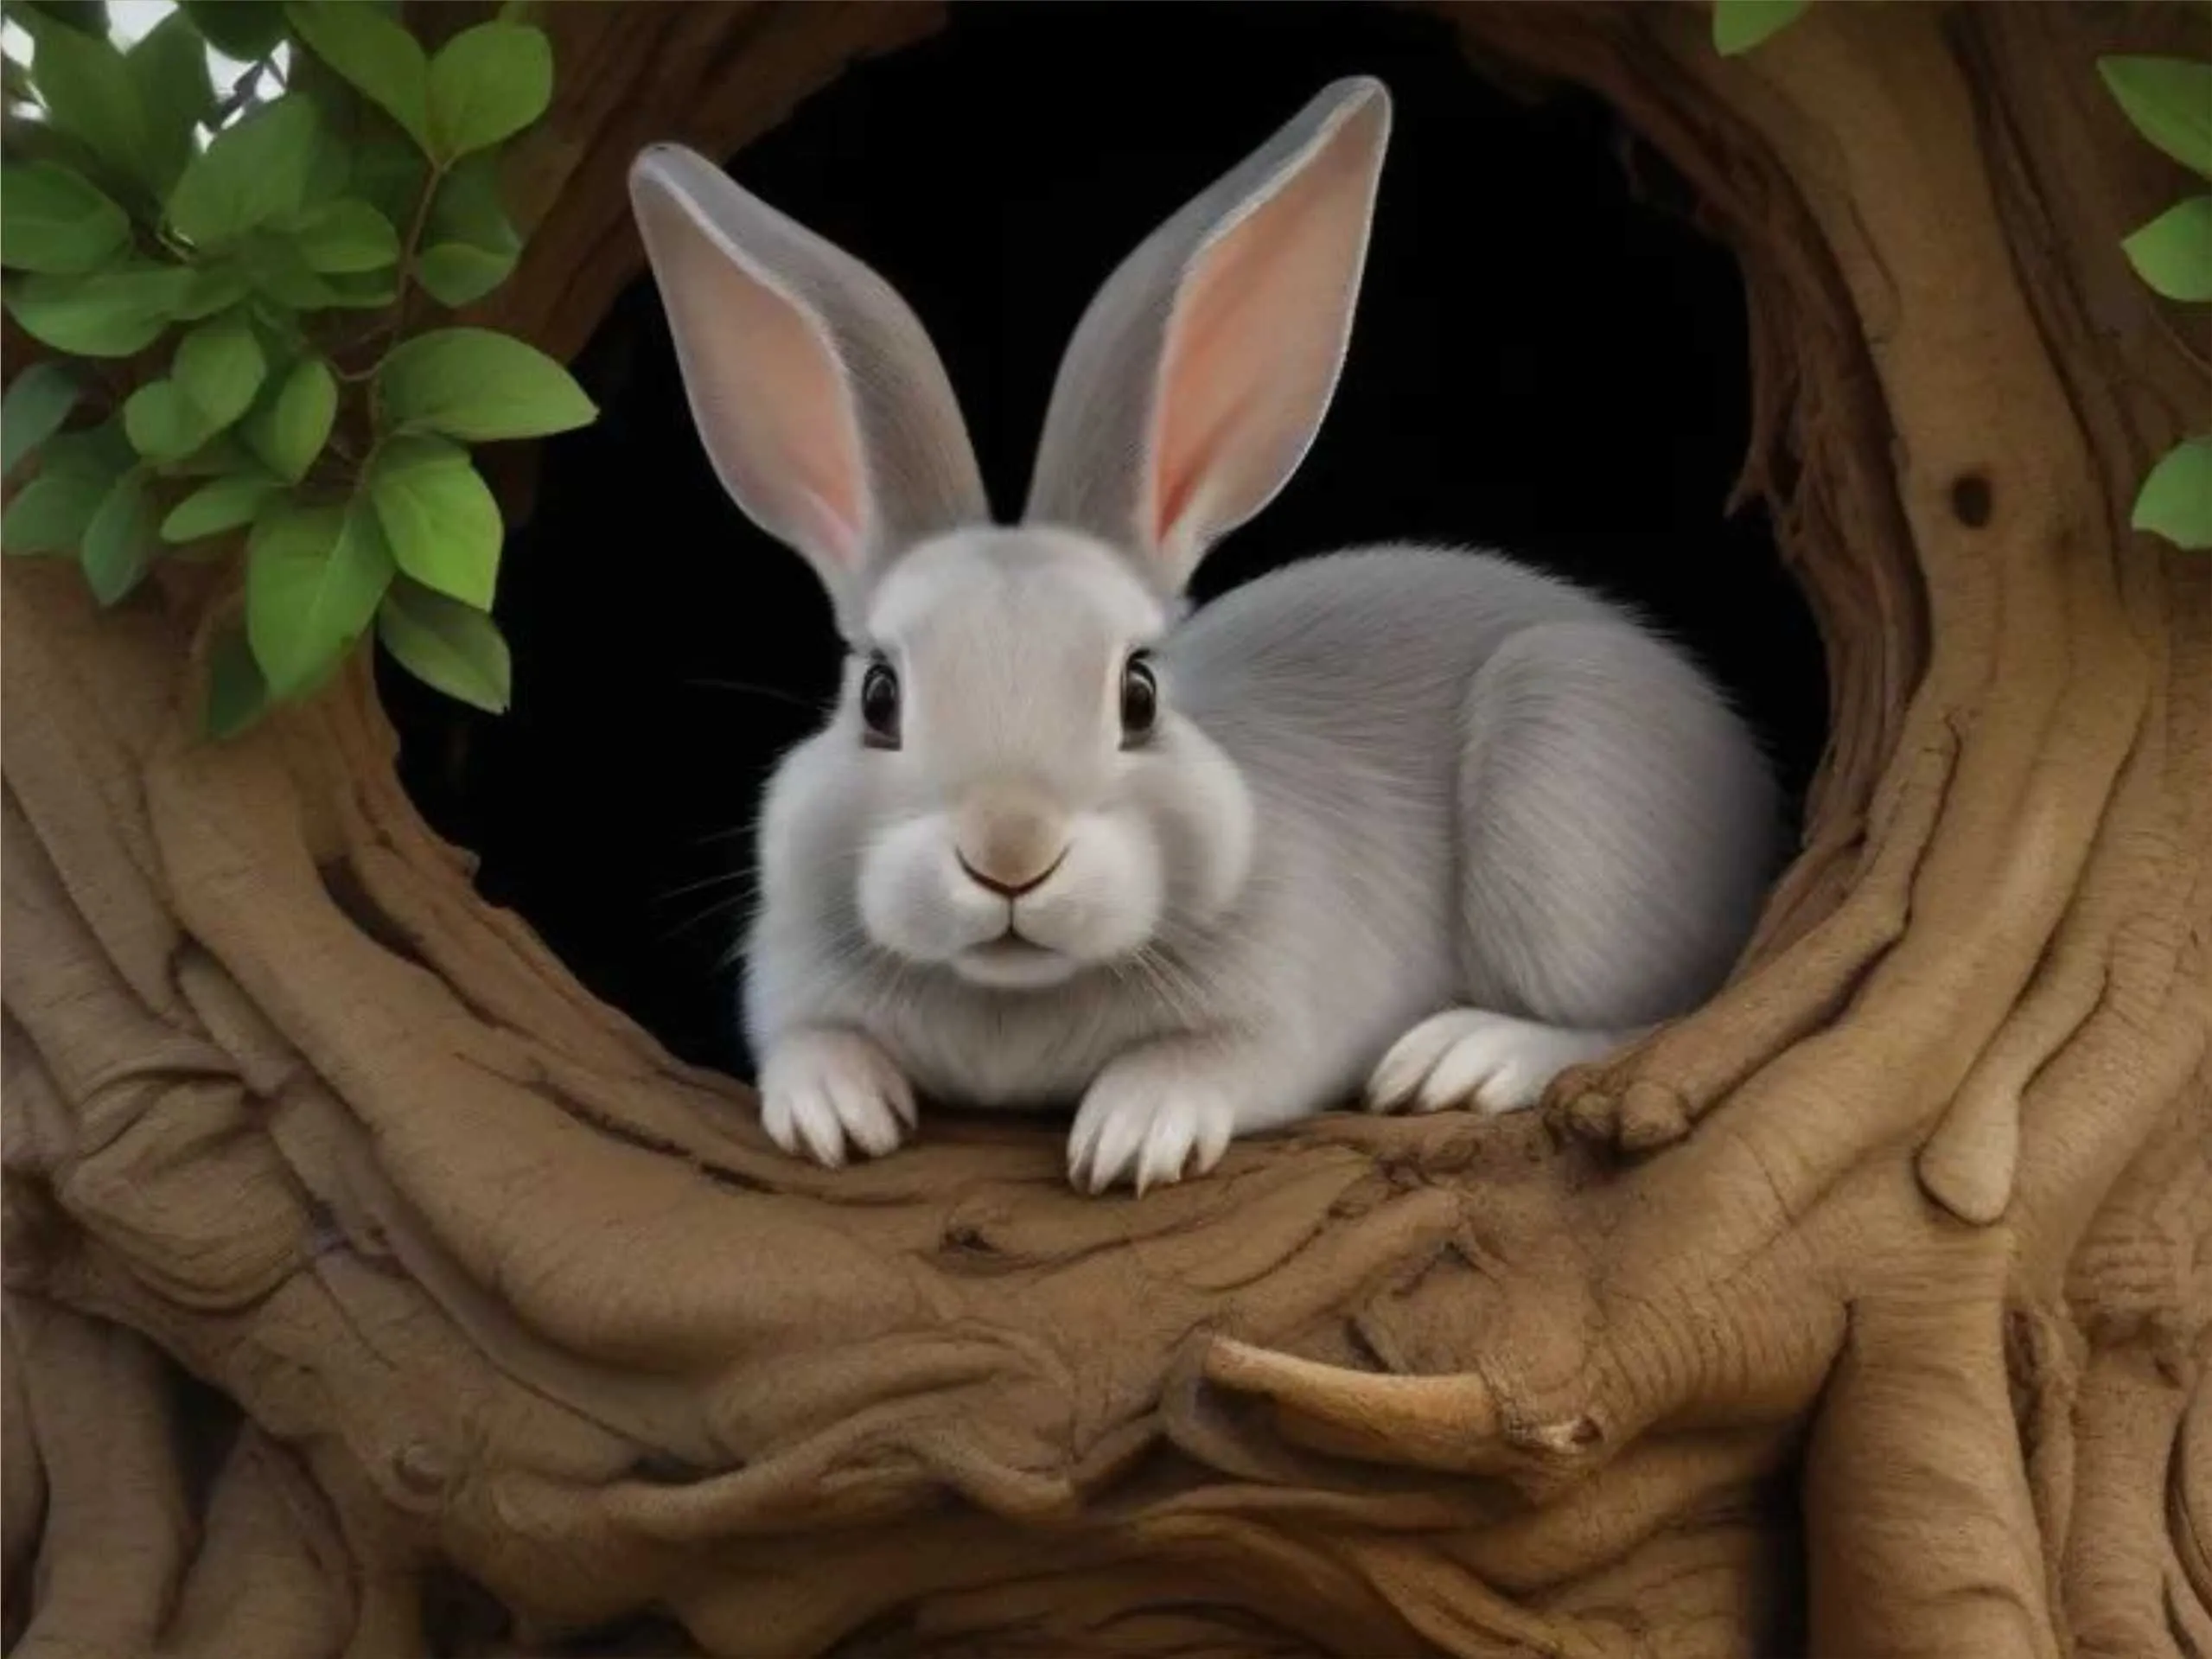 Rabbit in a tree hole cartoon image